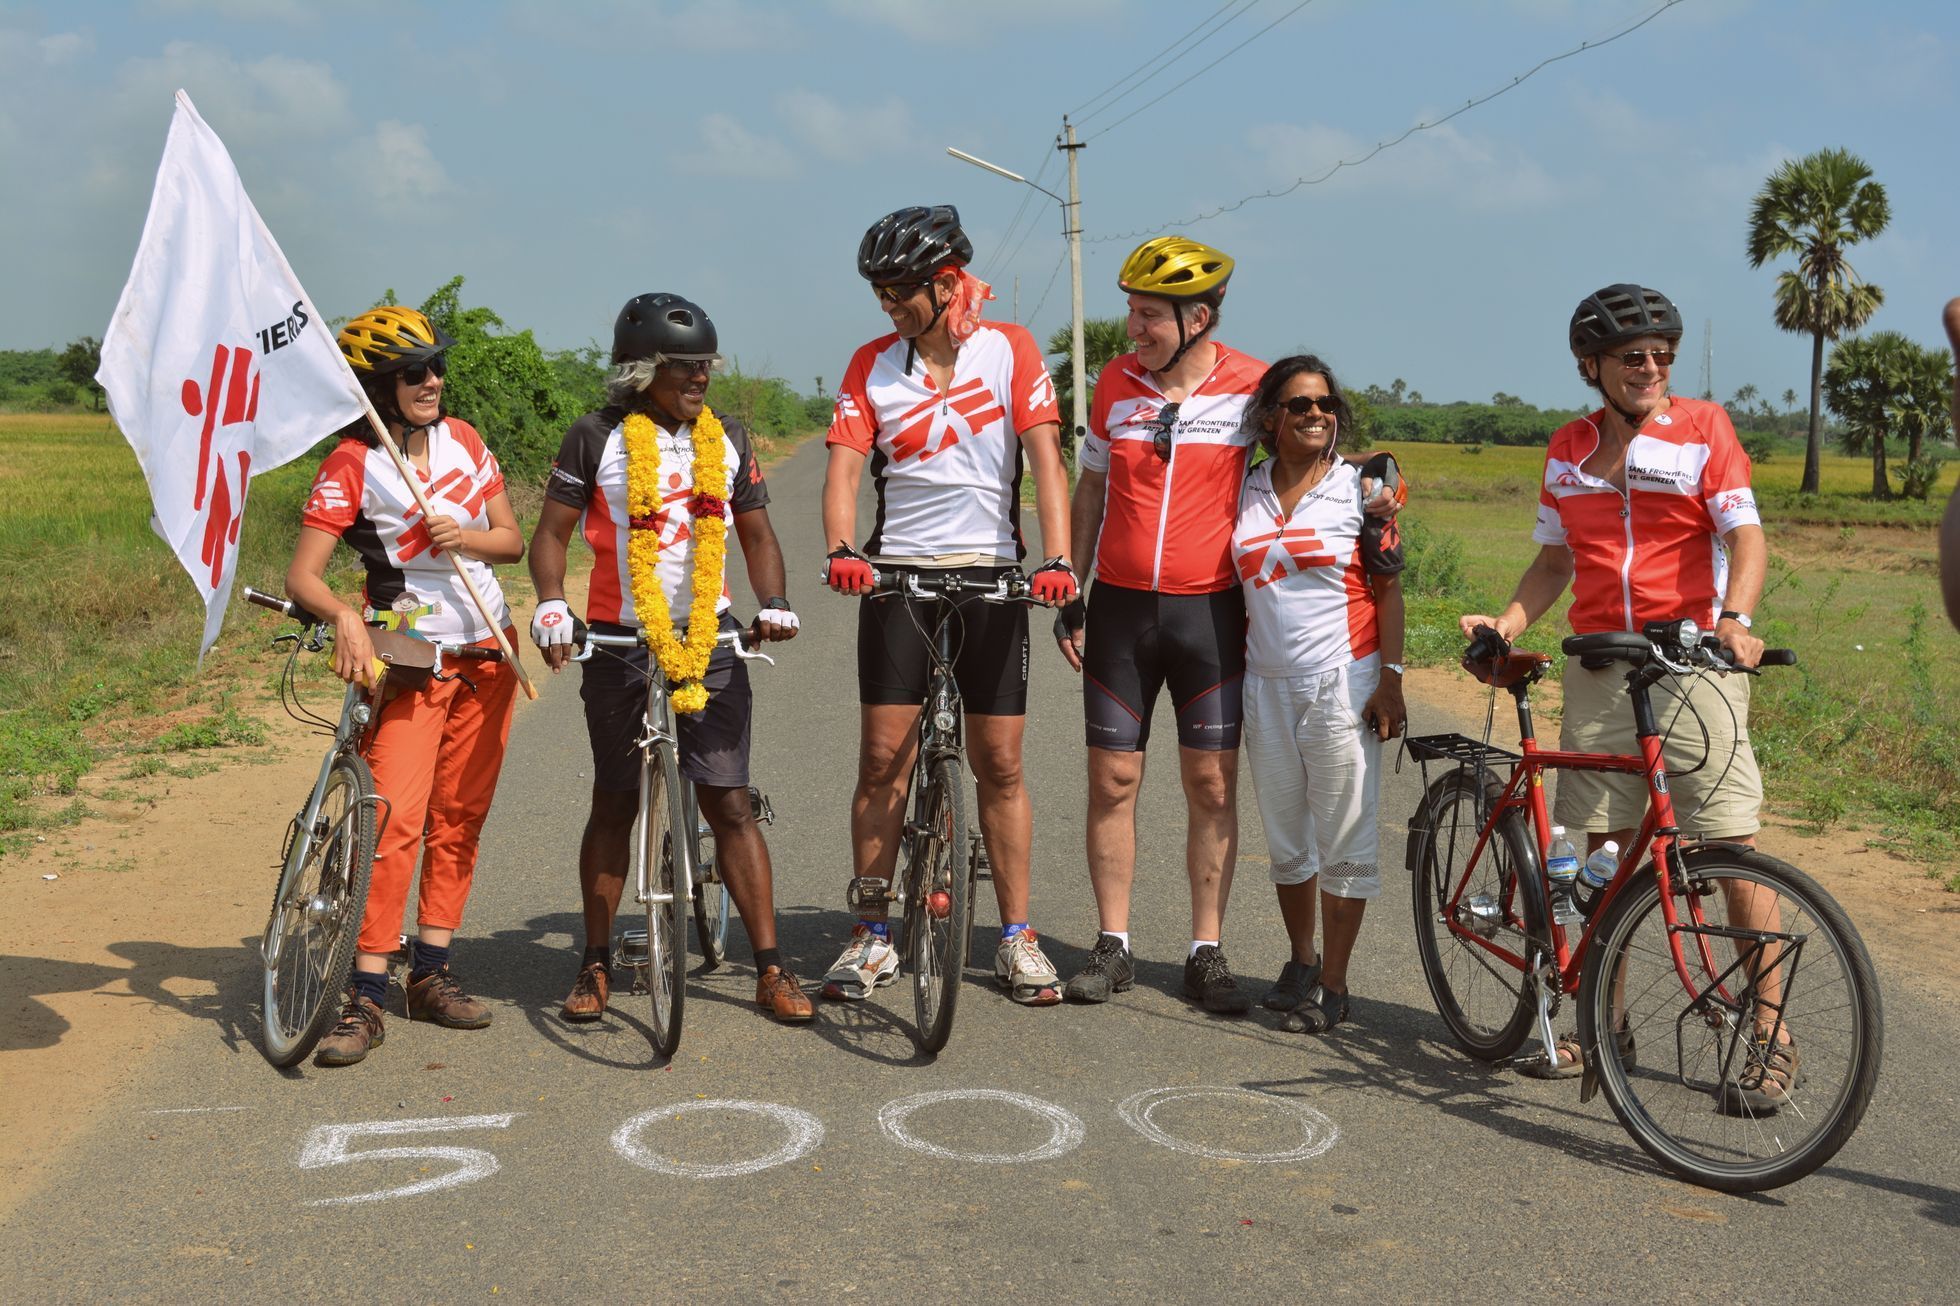 Sanjiv Suri na kole v Indii